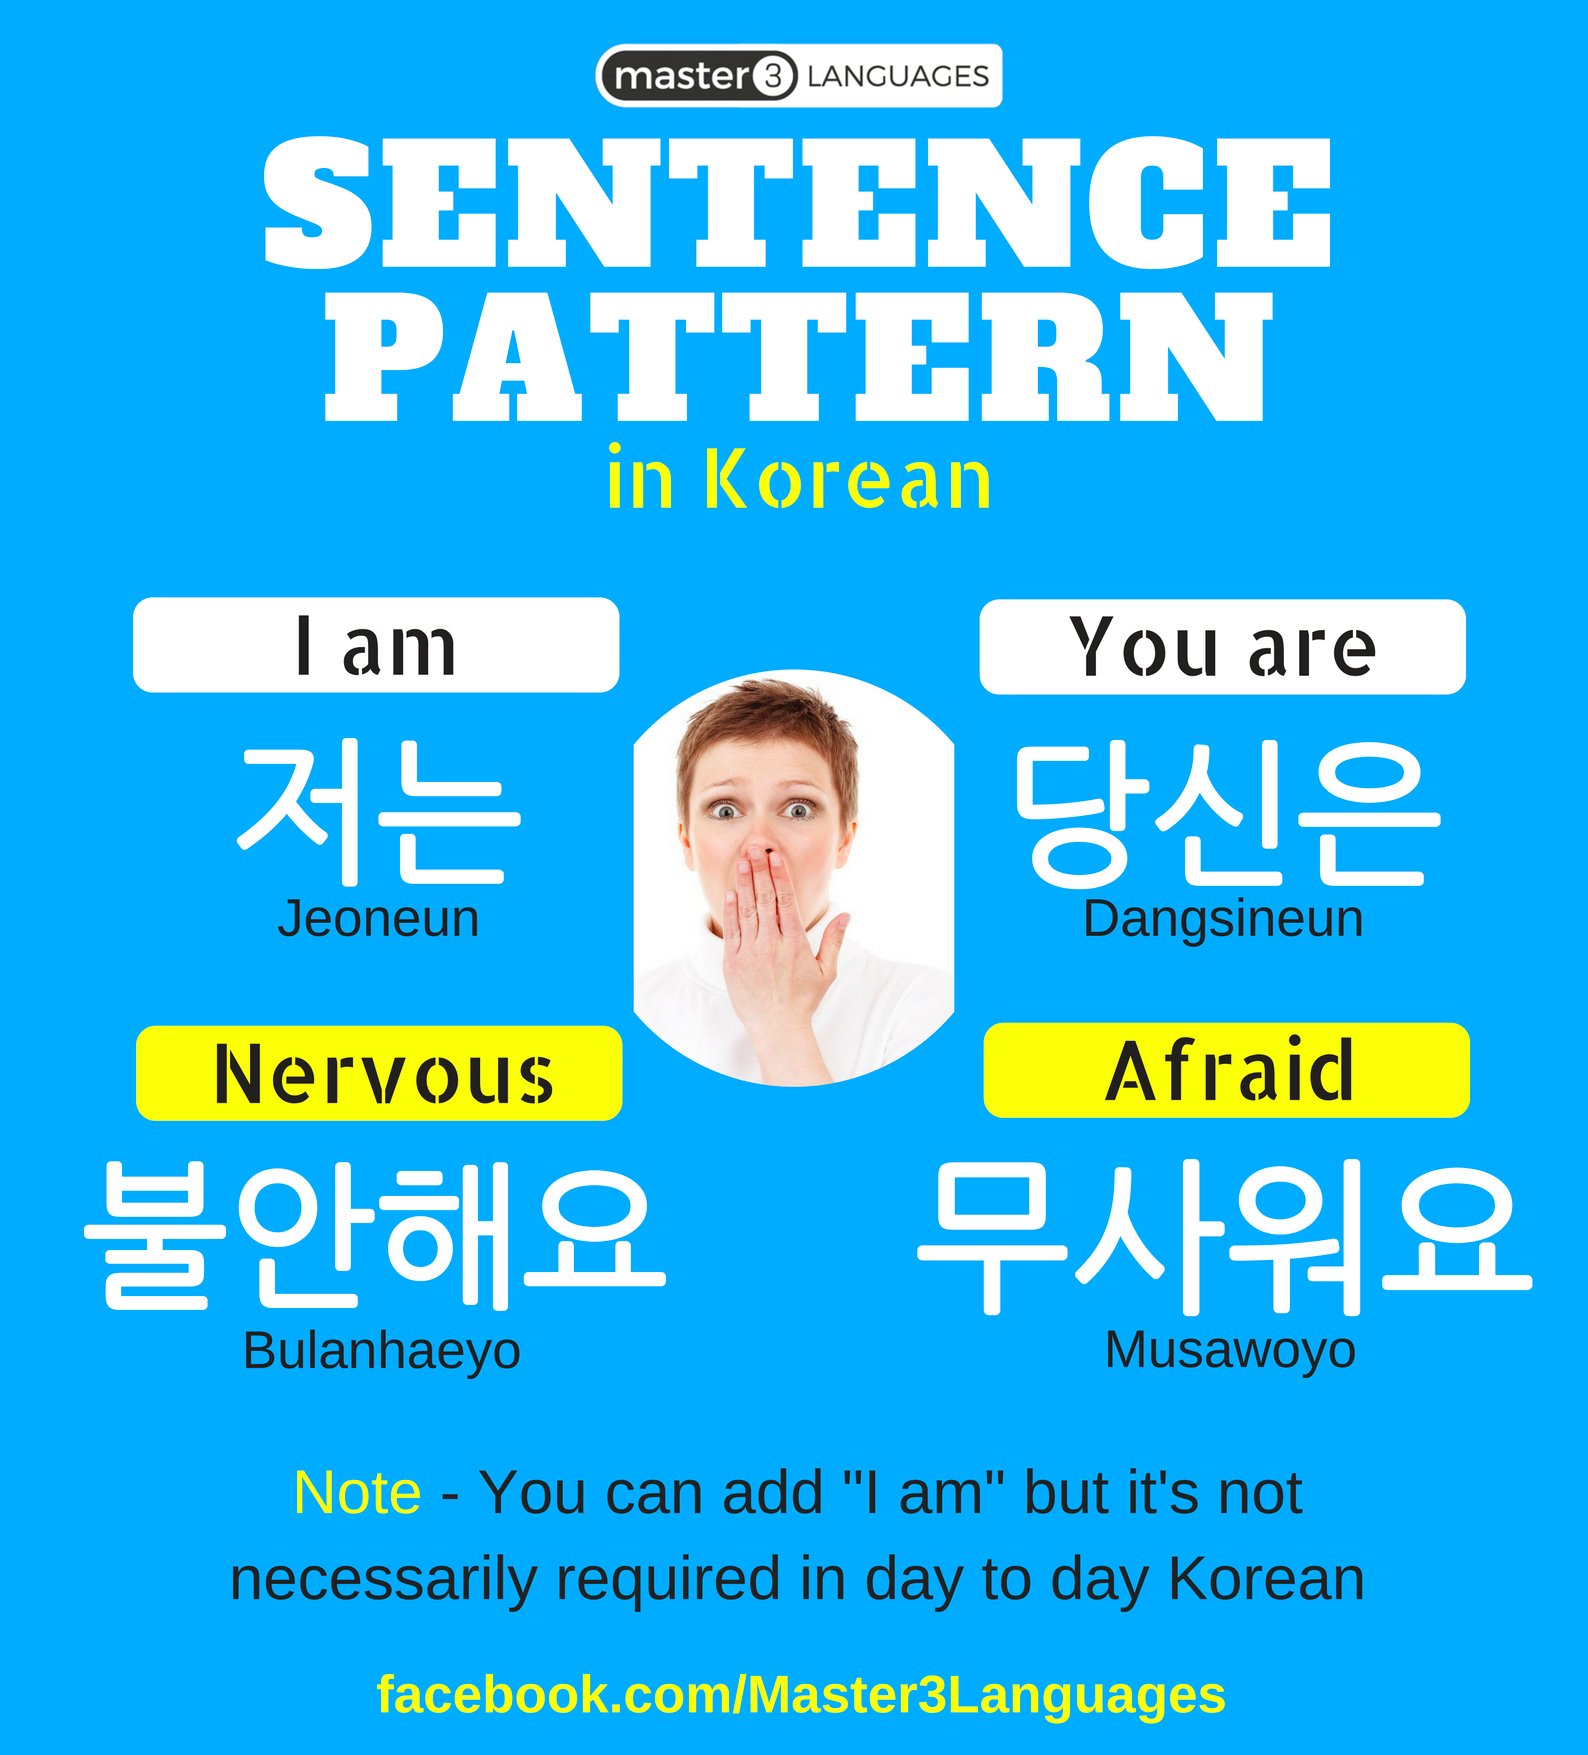 Master20Languages on Twitter: "Korean Sentence Pattern What more